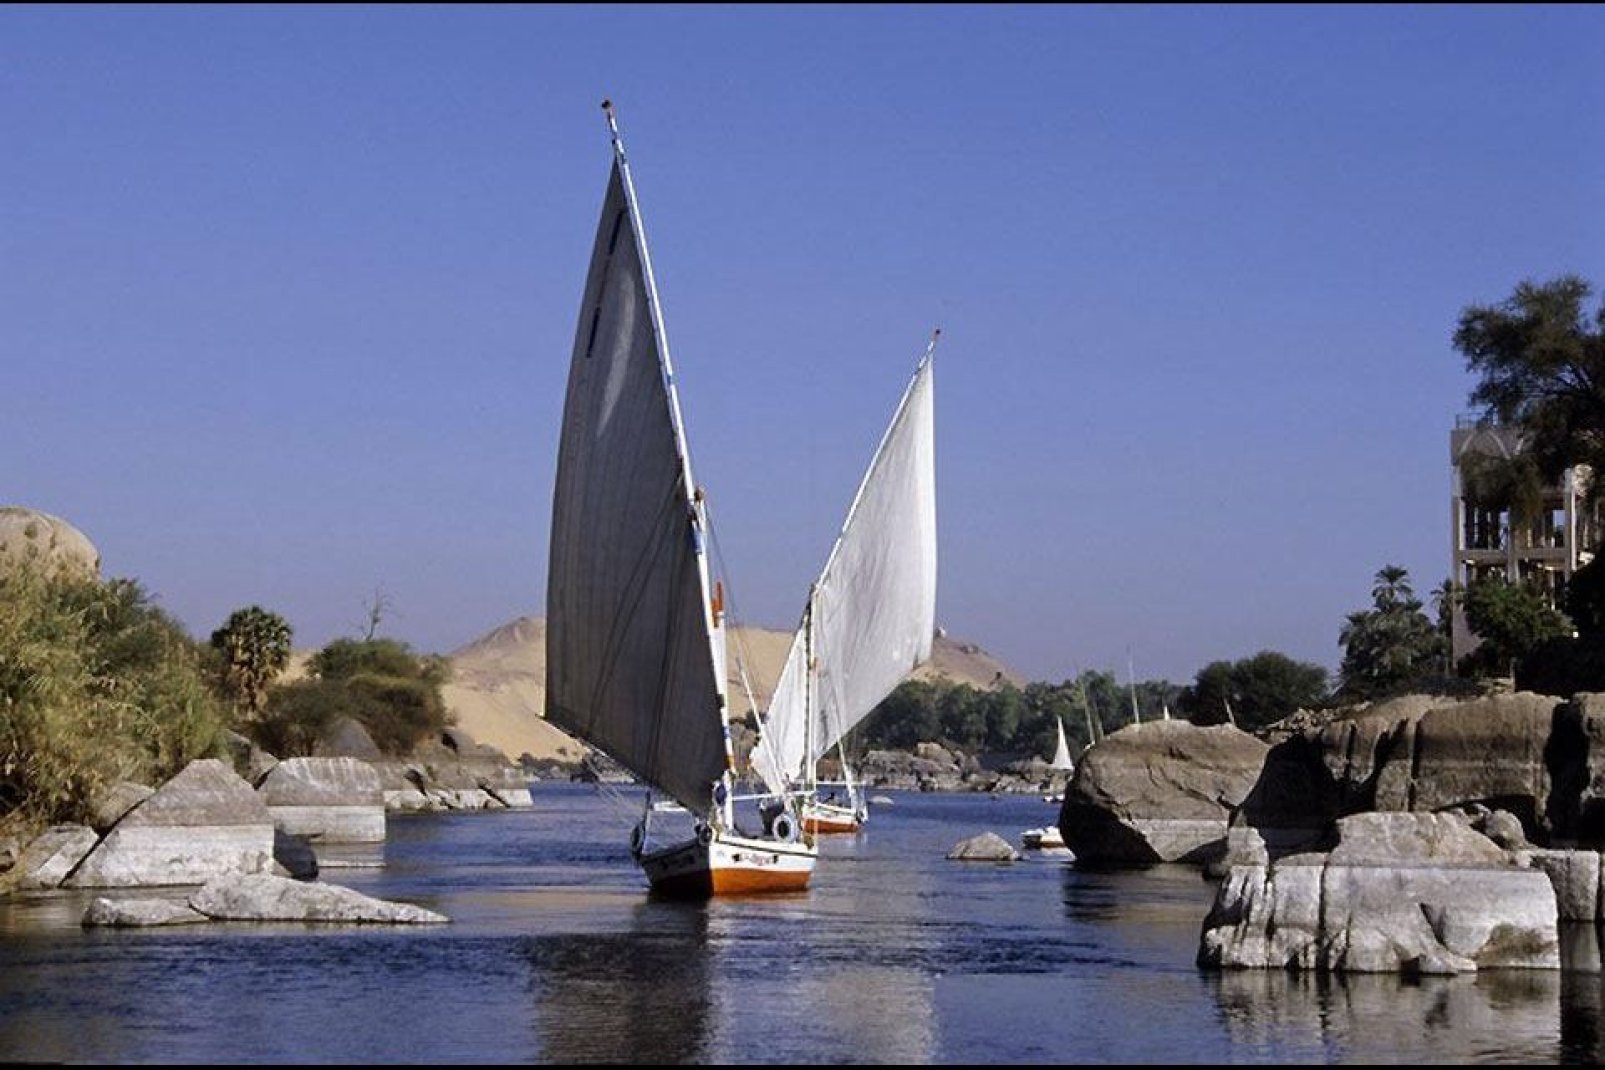 Symboles du fleuves, des felouques se fraient un passage dans la première cataracte du Nil.